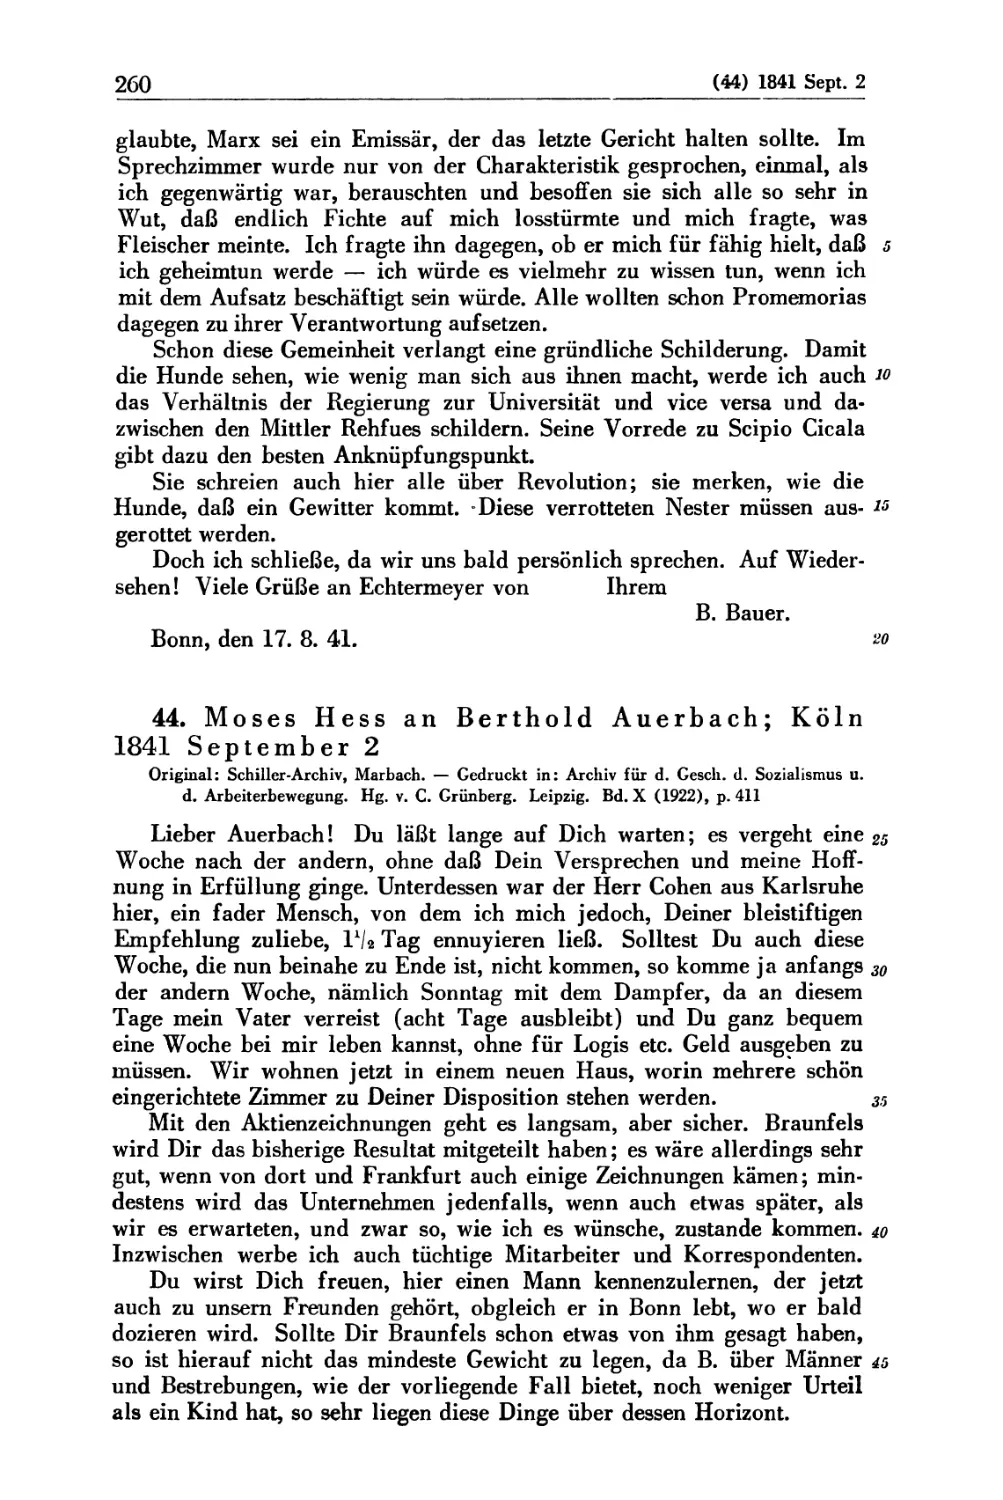 44. Moses Hess an Berthold Auerbach; Köln 1841 September 2